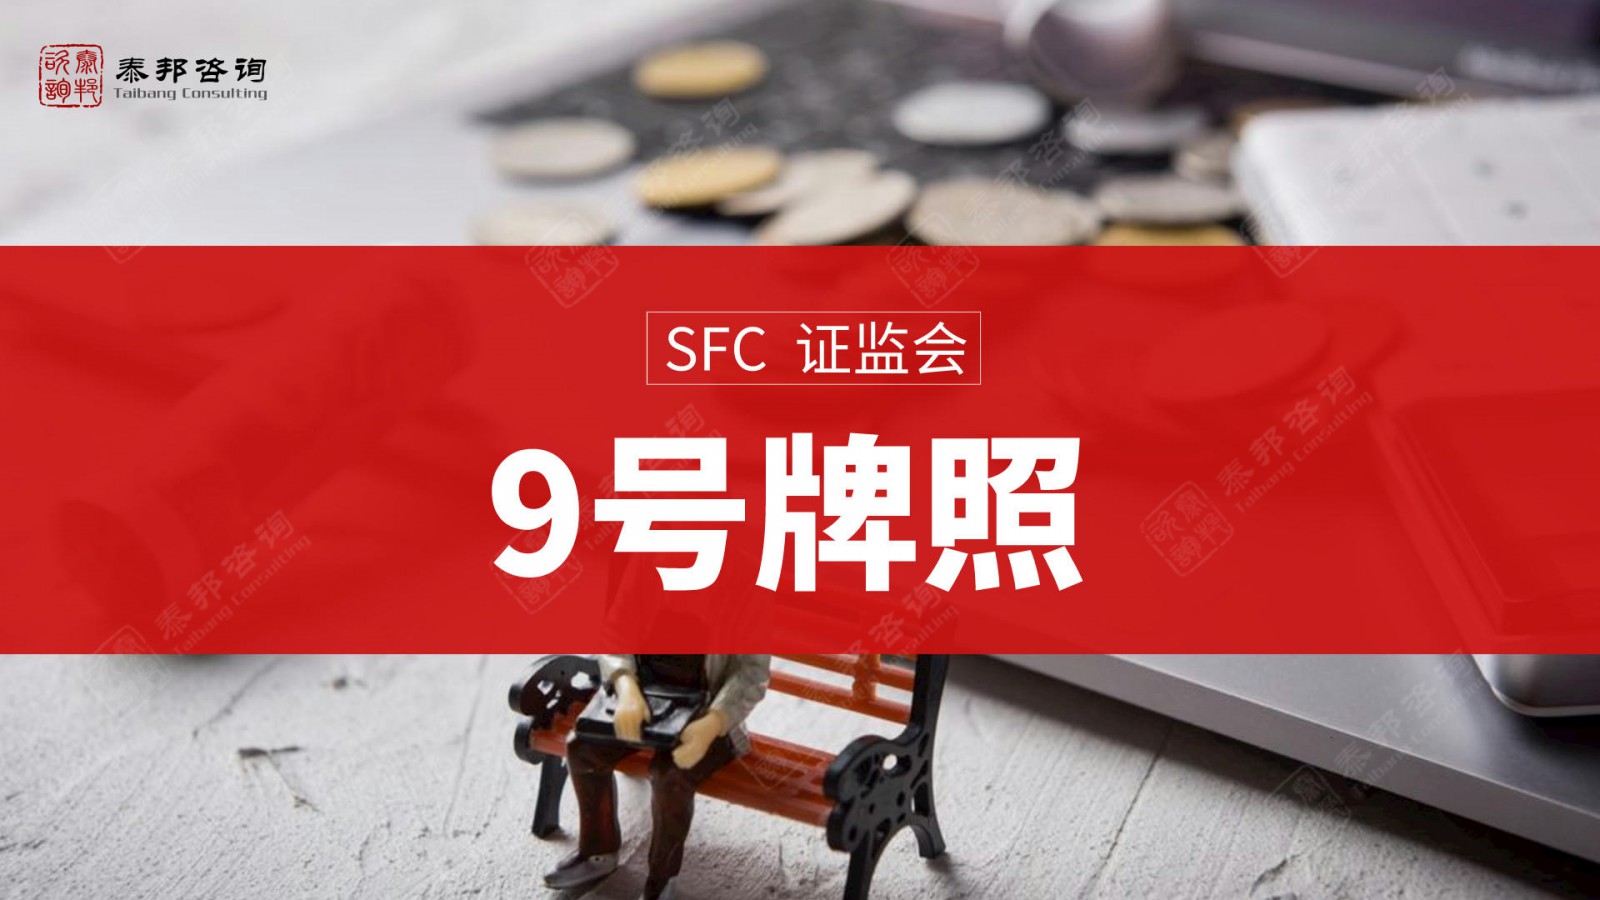 申请代办香港149号金融牌照步骤分解